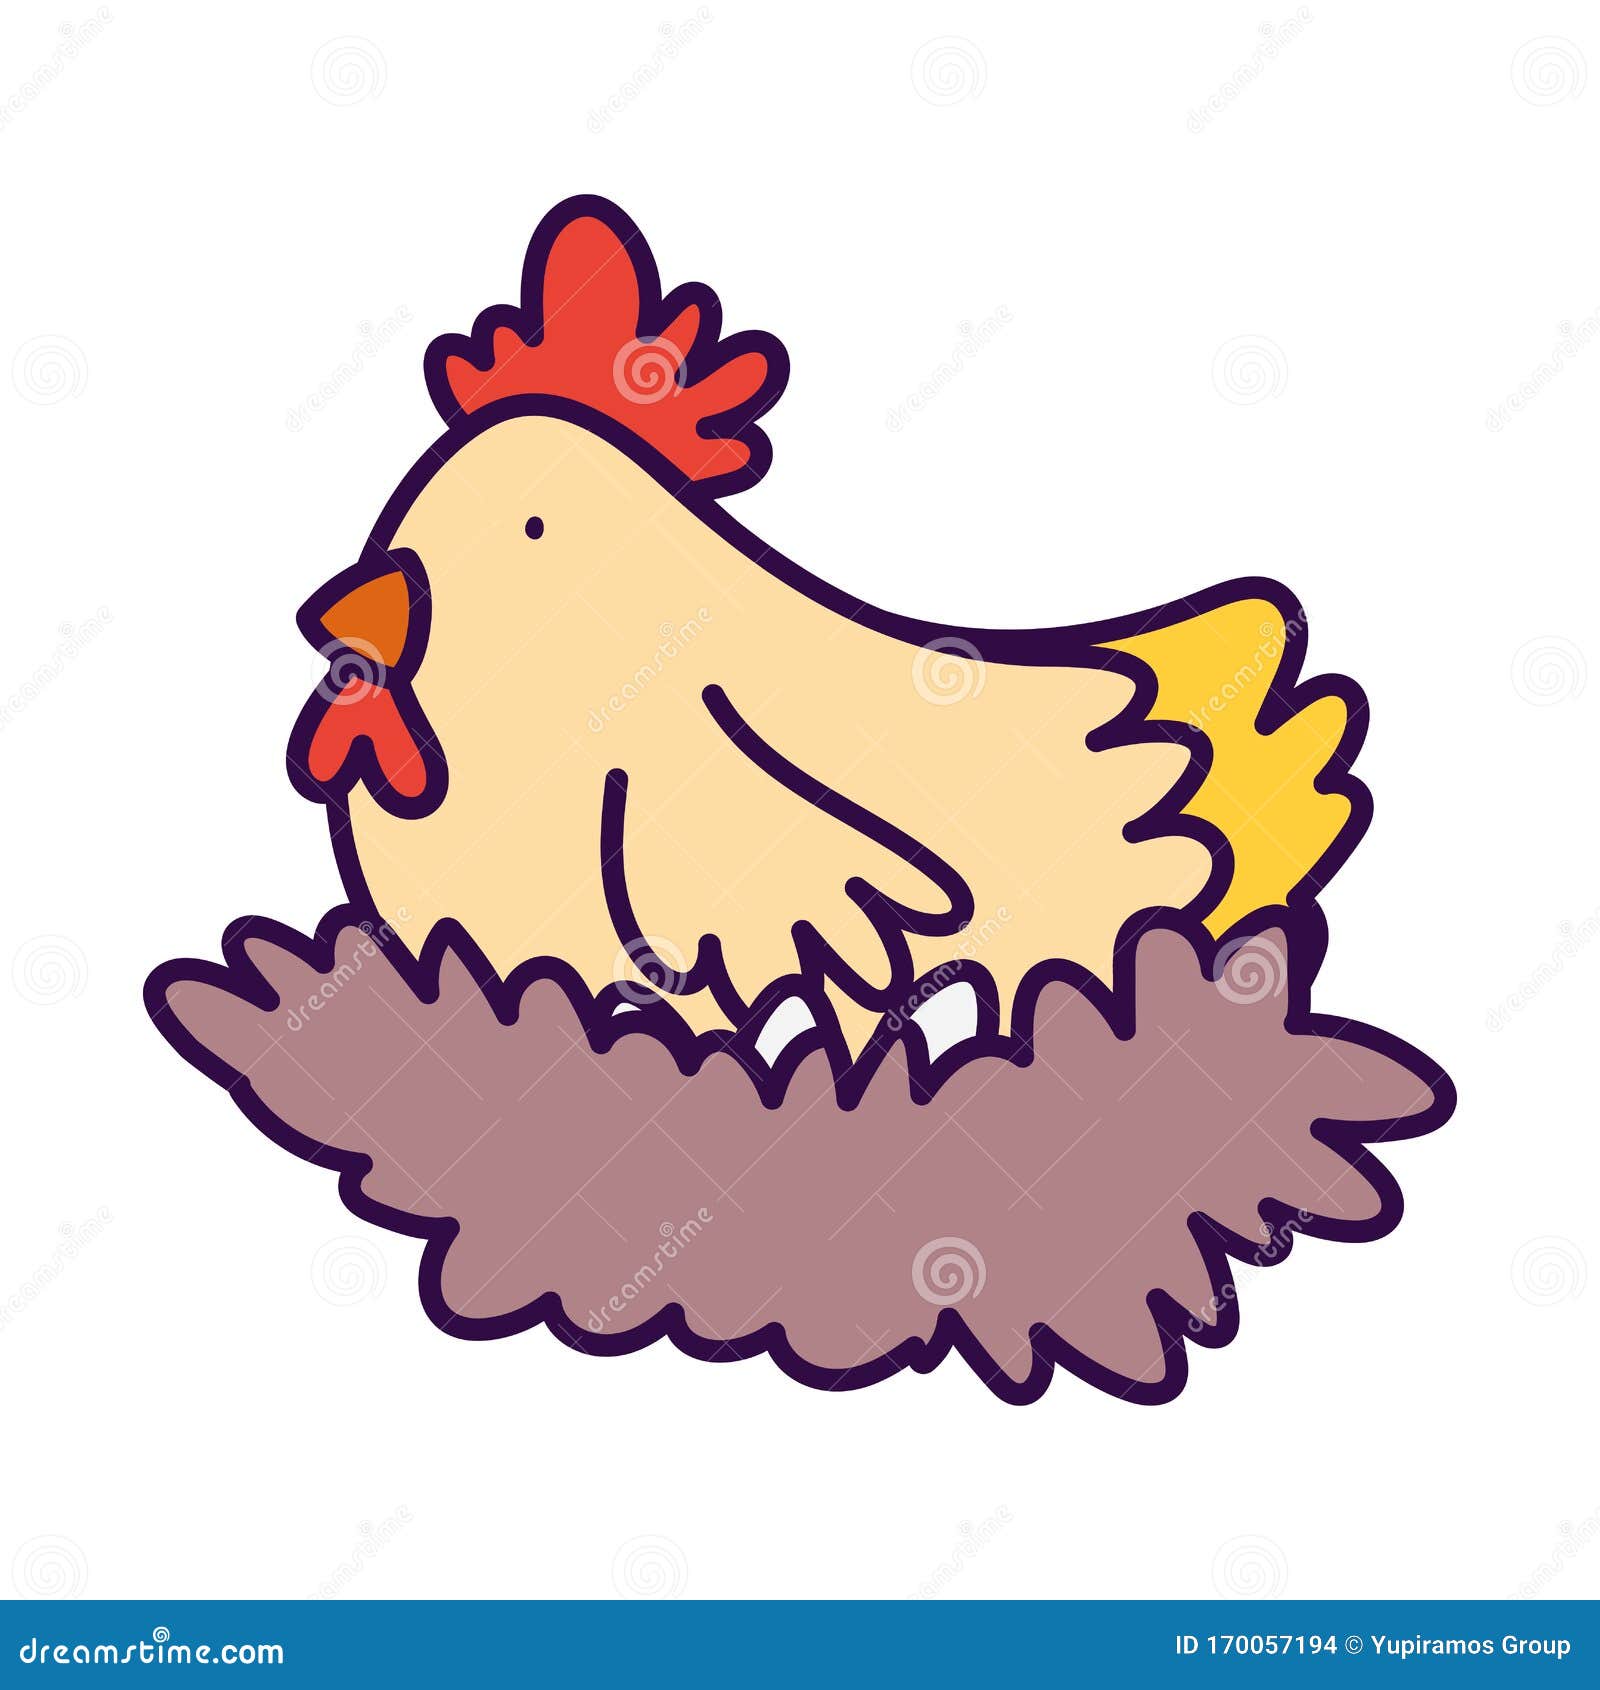 galinha de mãe fofa de desenho animado no ninho choca ovos coloridos de  páscoa. ilustração em vetor isolado simples dos desenhos animados.  imprimindo uma ilustração de páscoa em um cartão postal, camiseta.